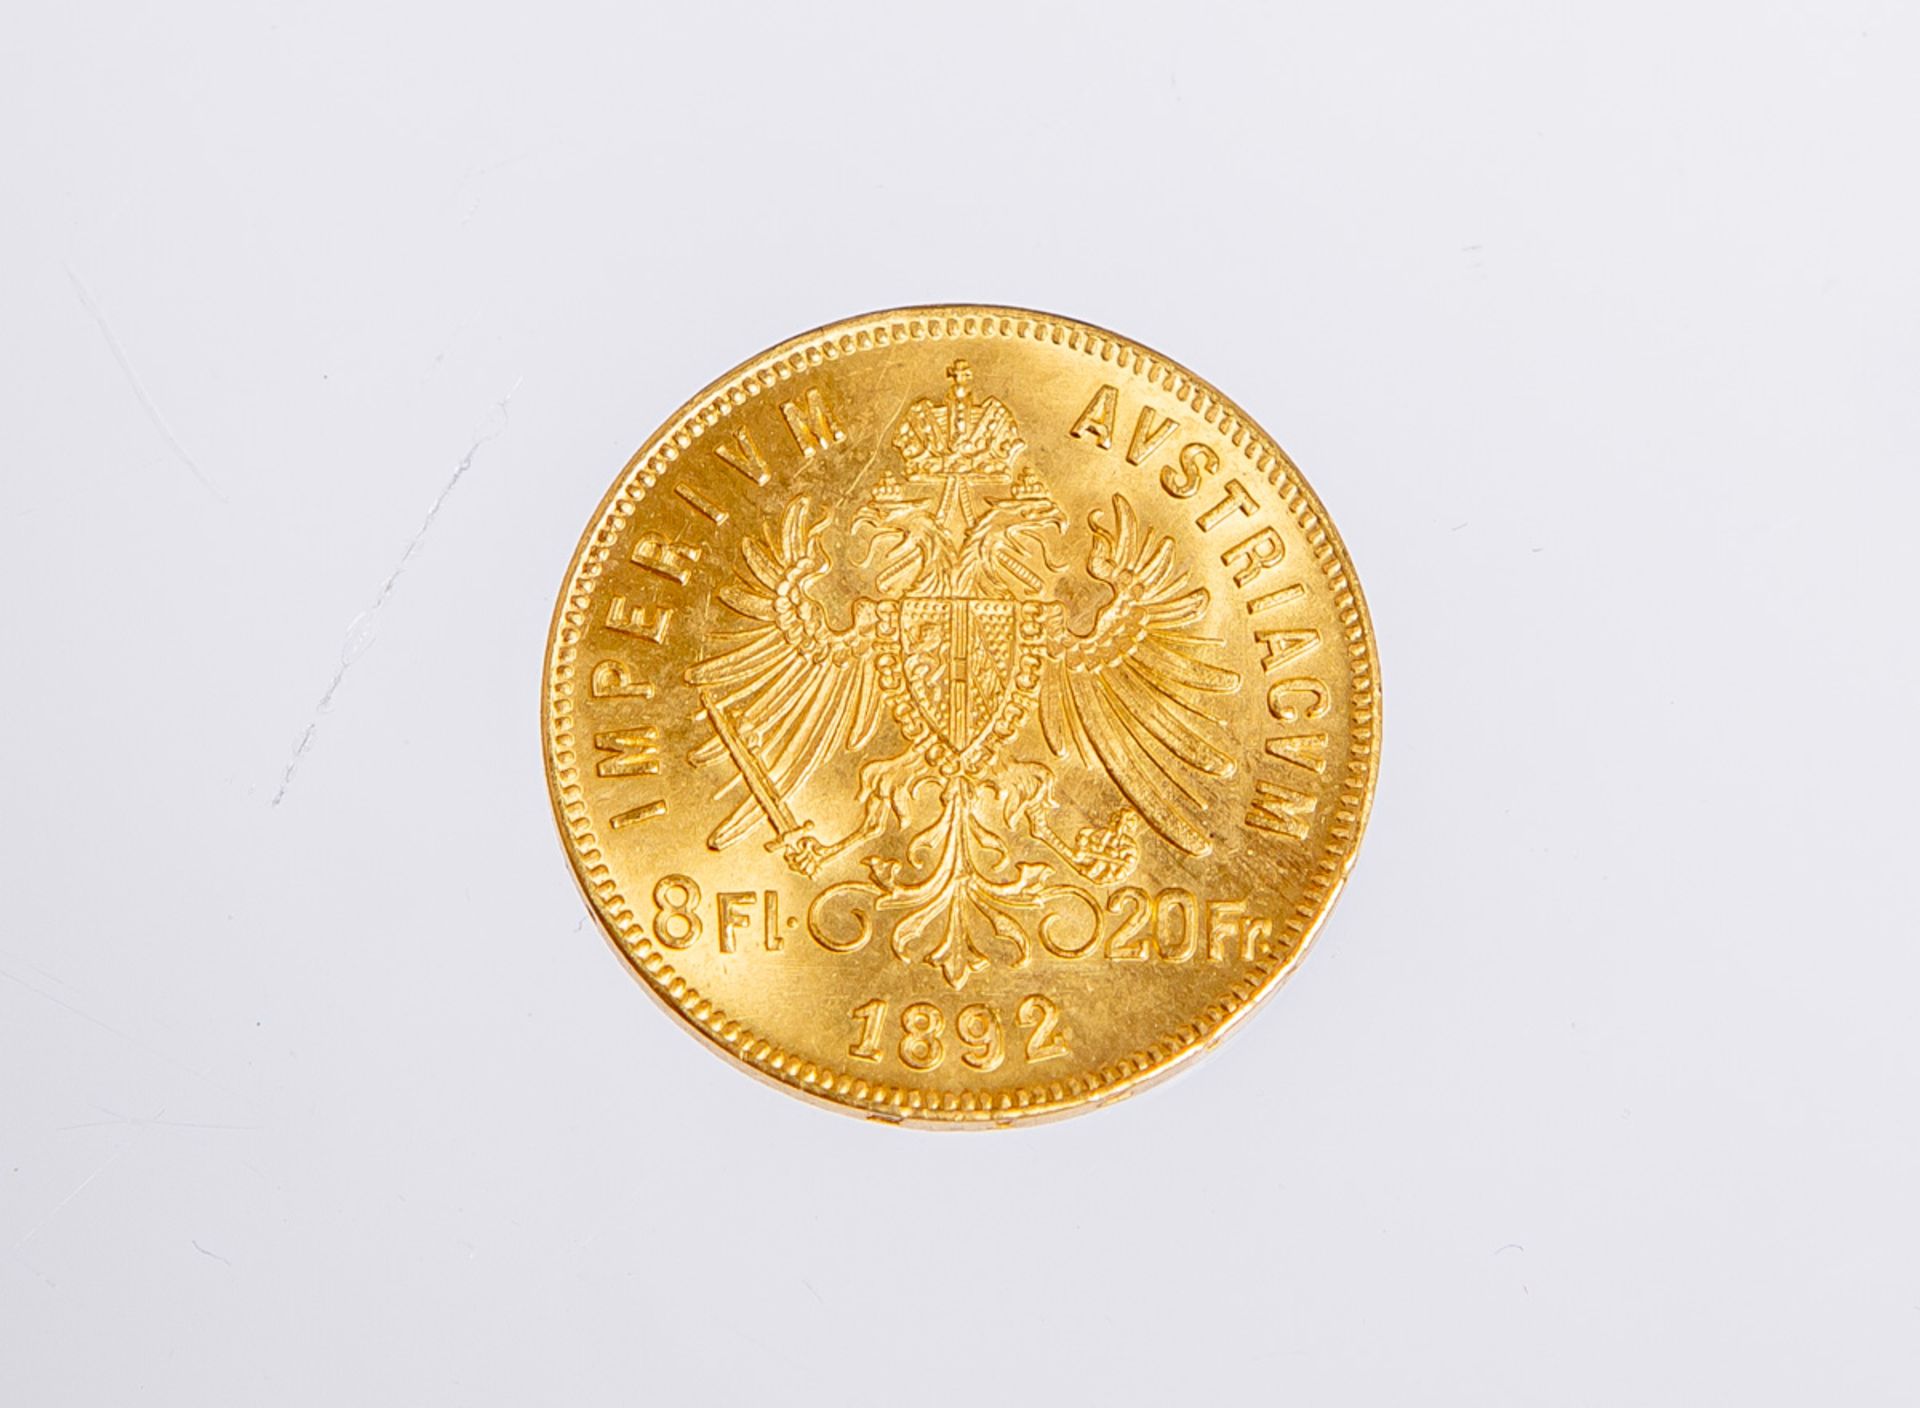 Goldmünze "Imperium Austriacum" (Österreich, 1892) - Bild 2 aus 2